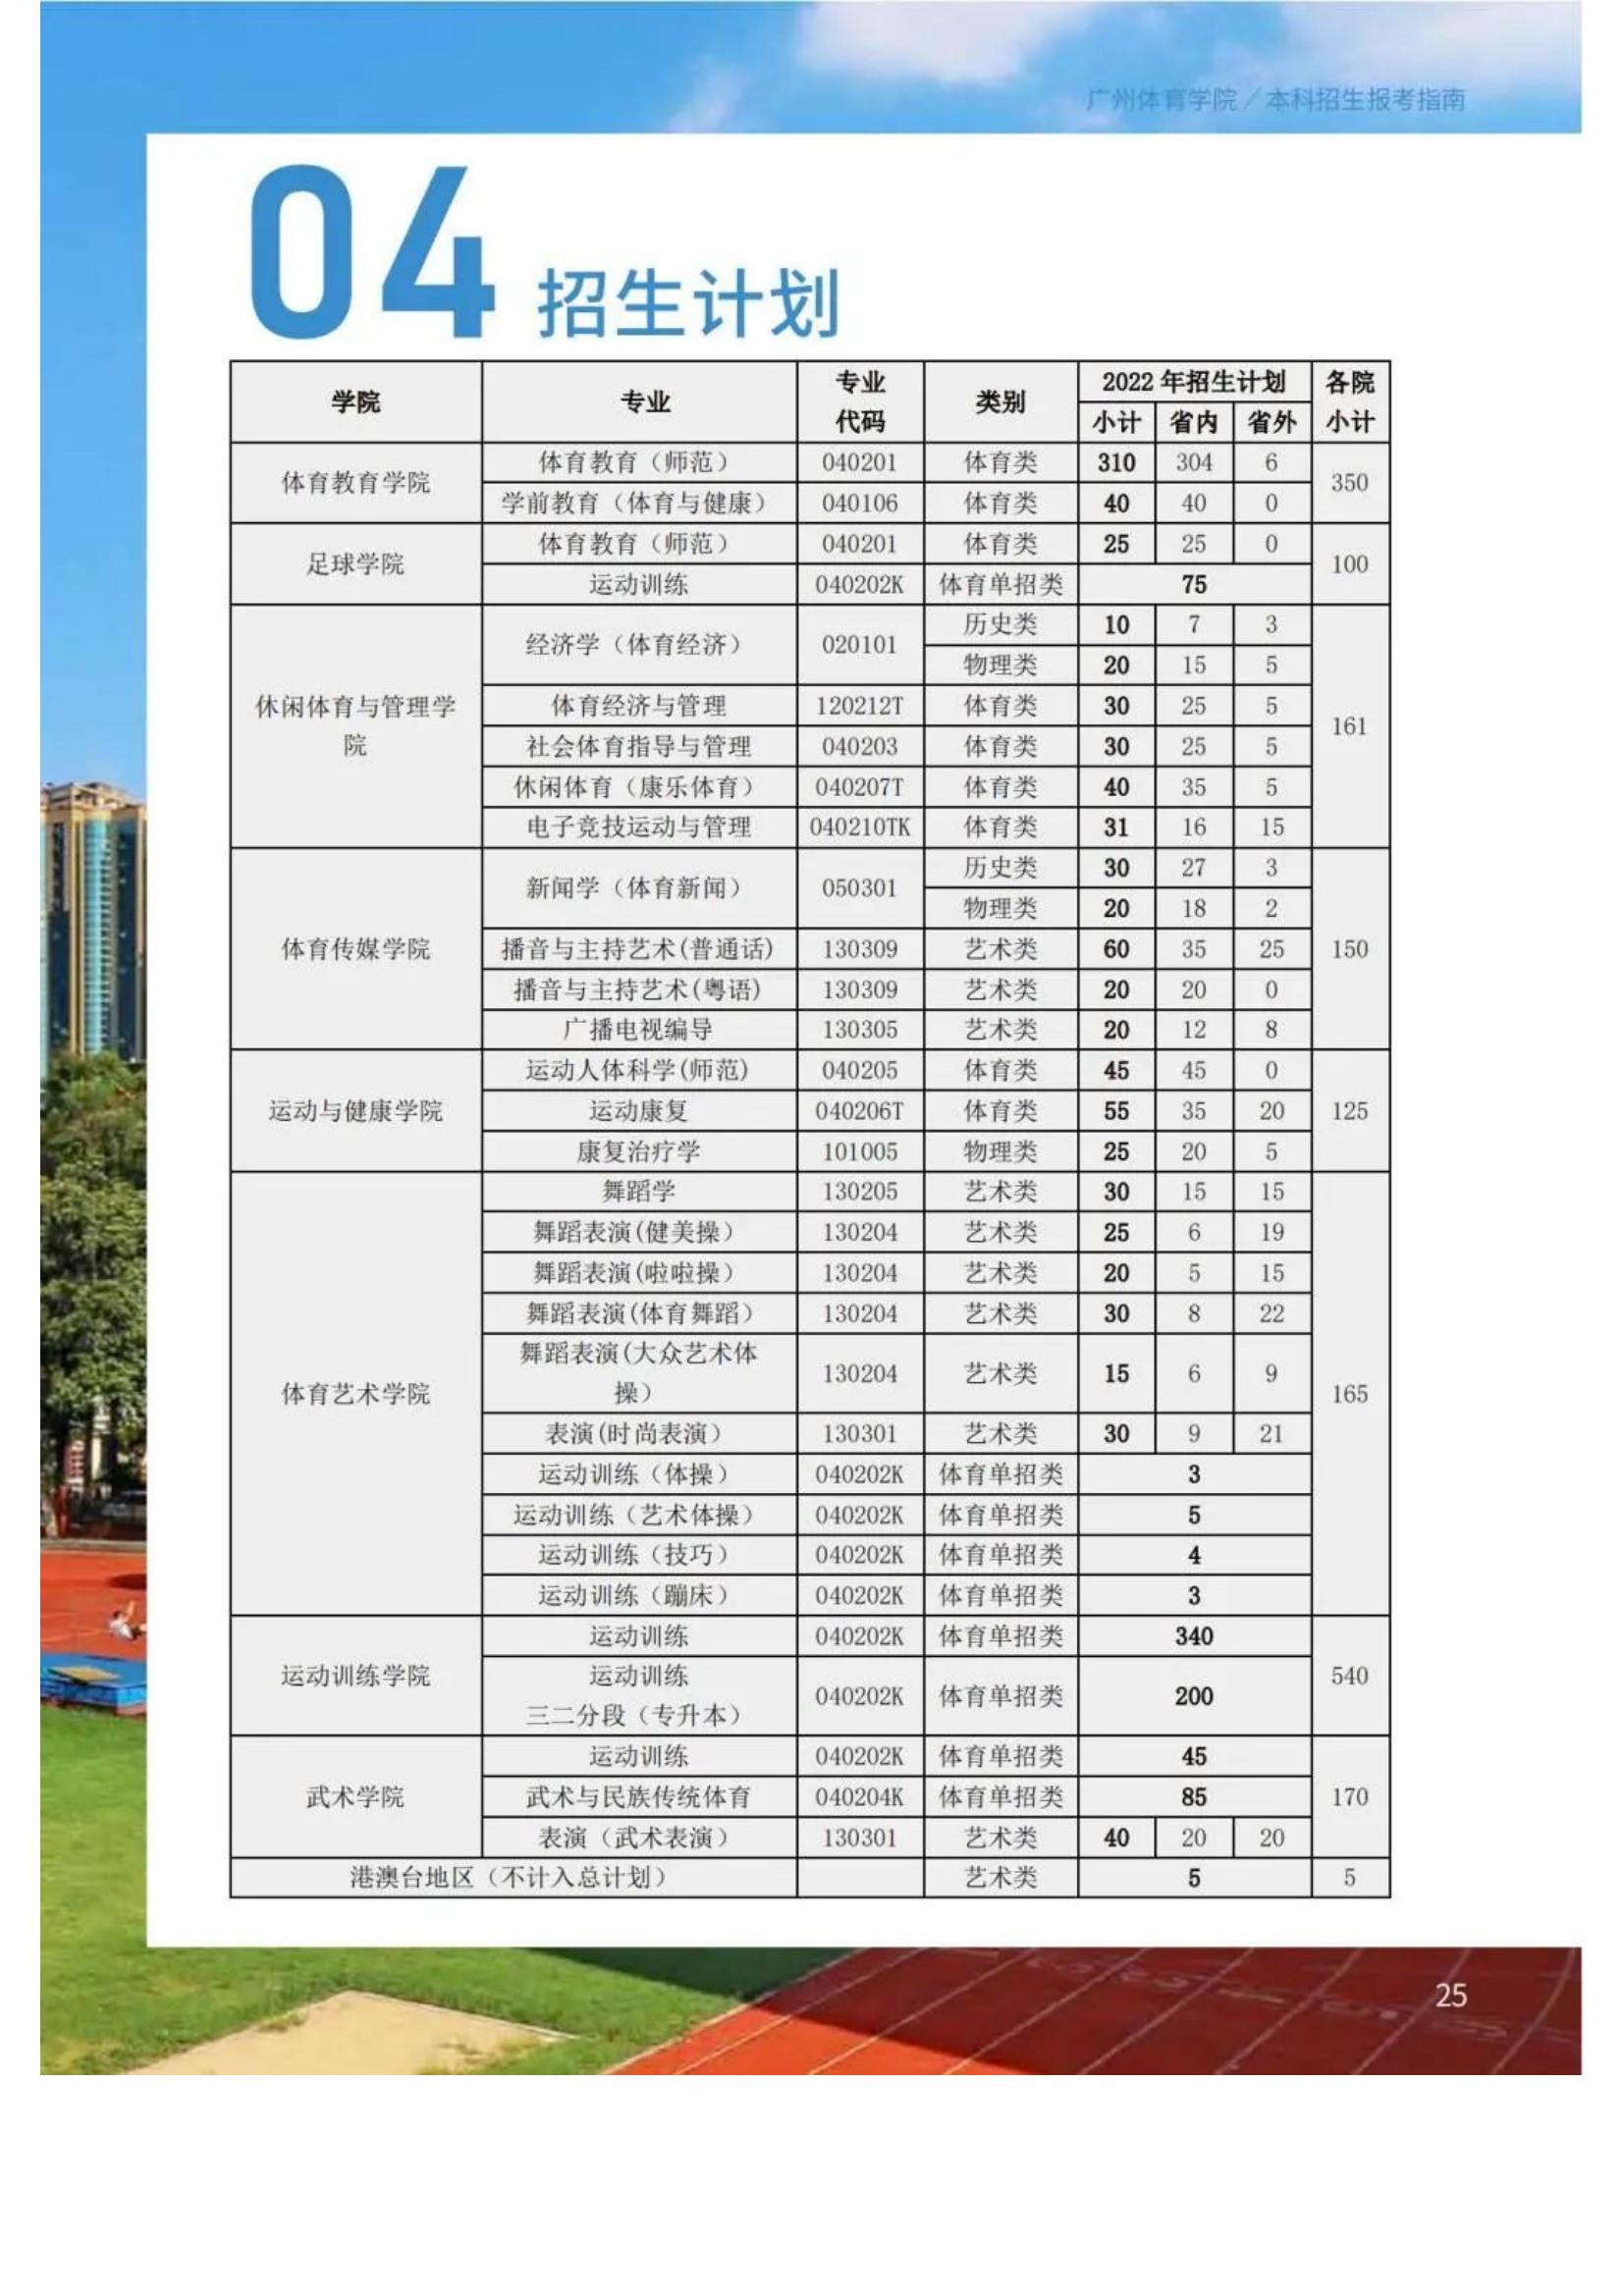 广州体育学院2022年报考指南发布_27.jpg